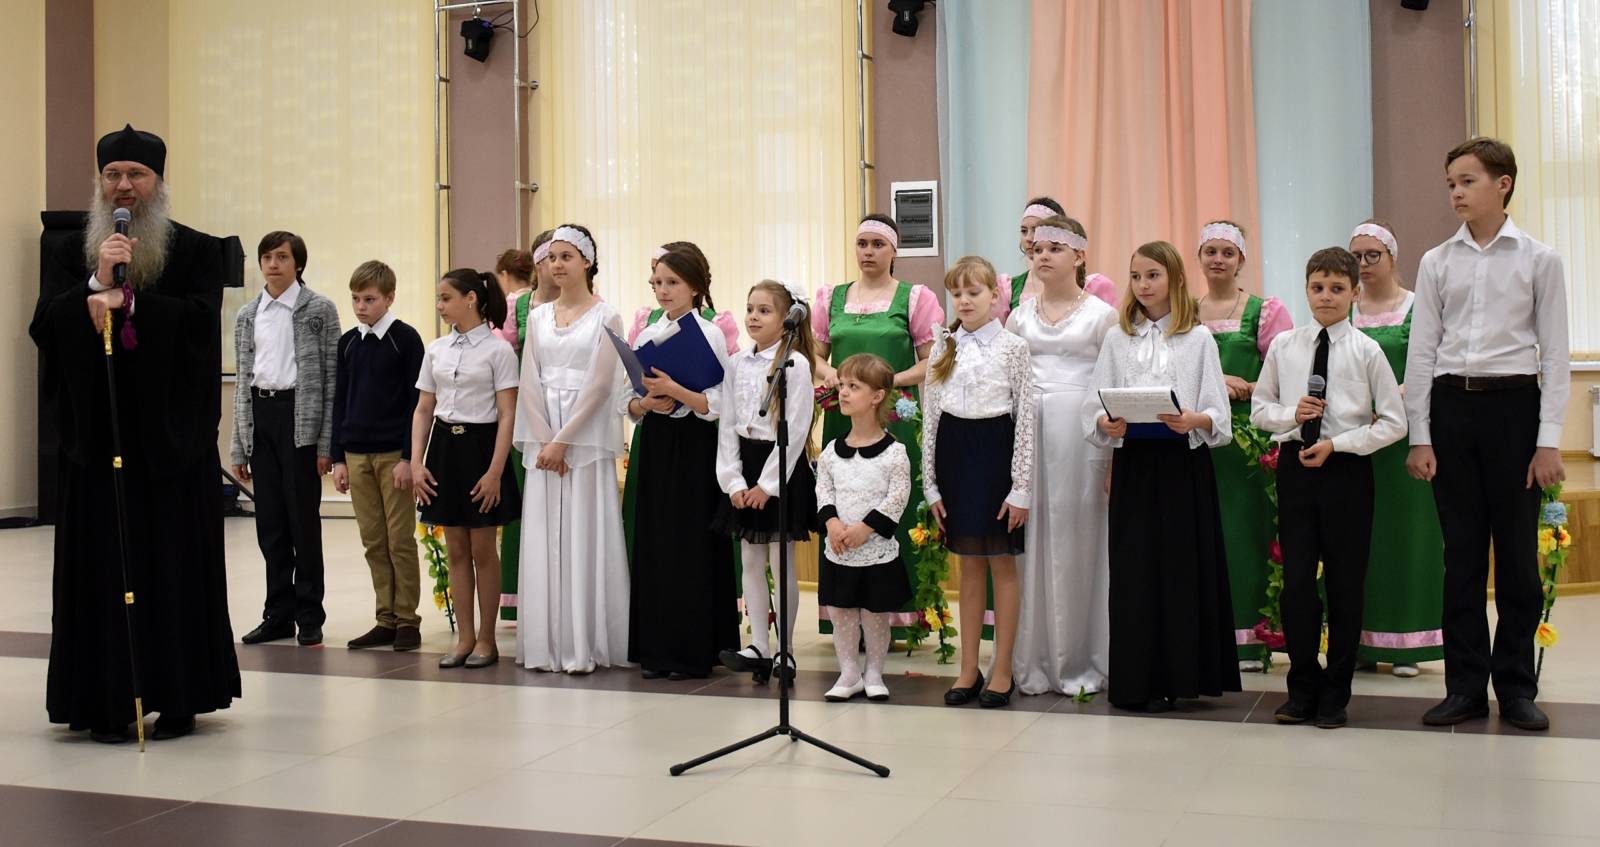 Пасхальный концерт в малом зале ТКЦ «Юбилейный» г. Урюпинска.